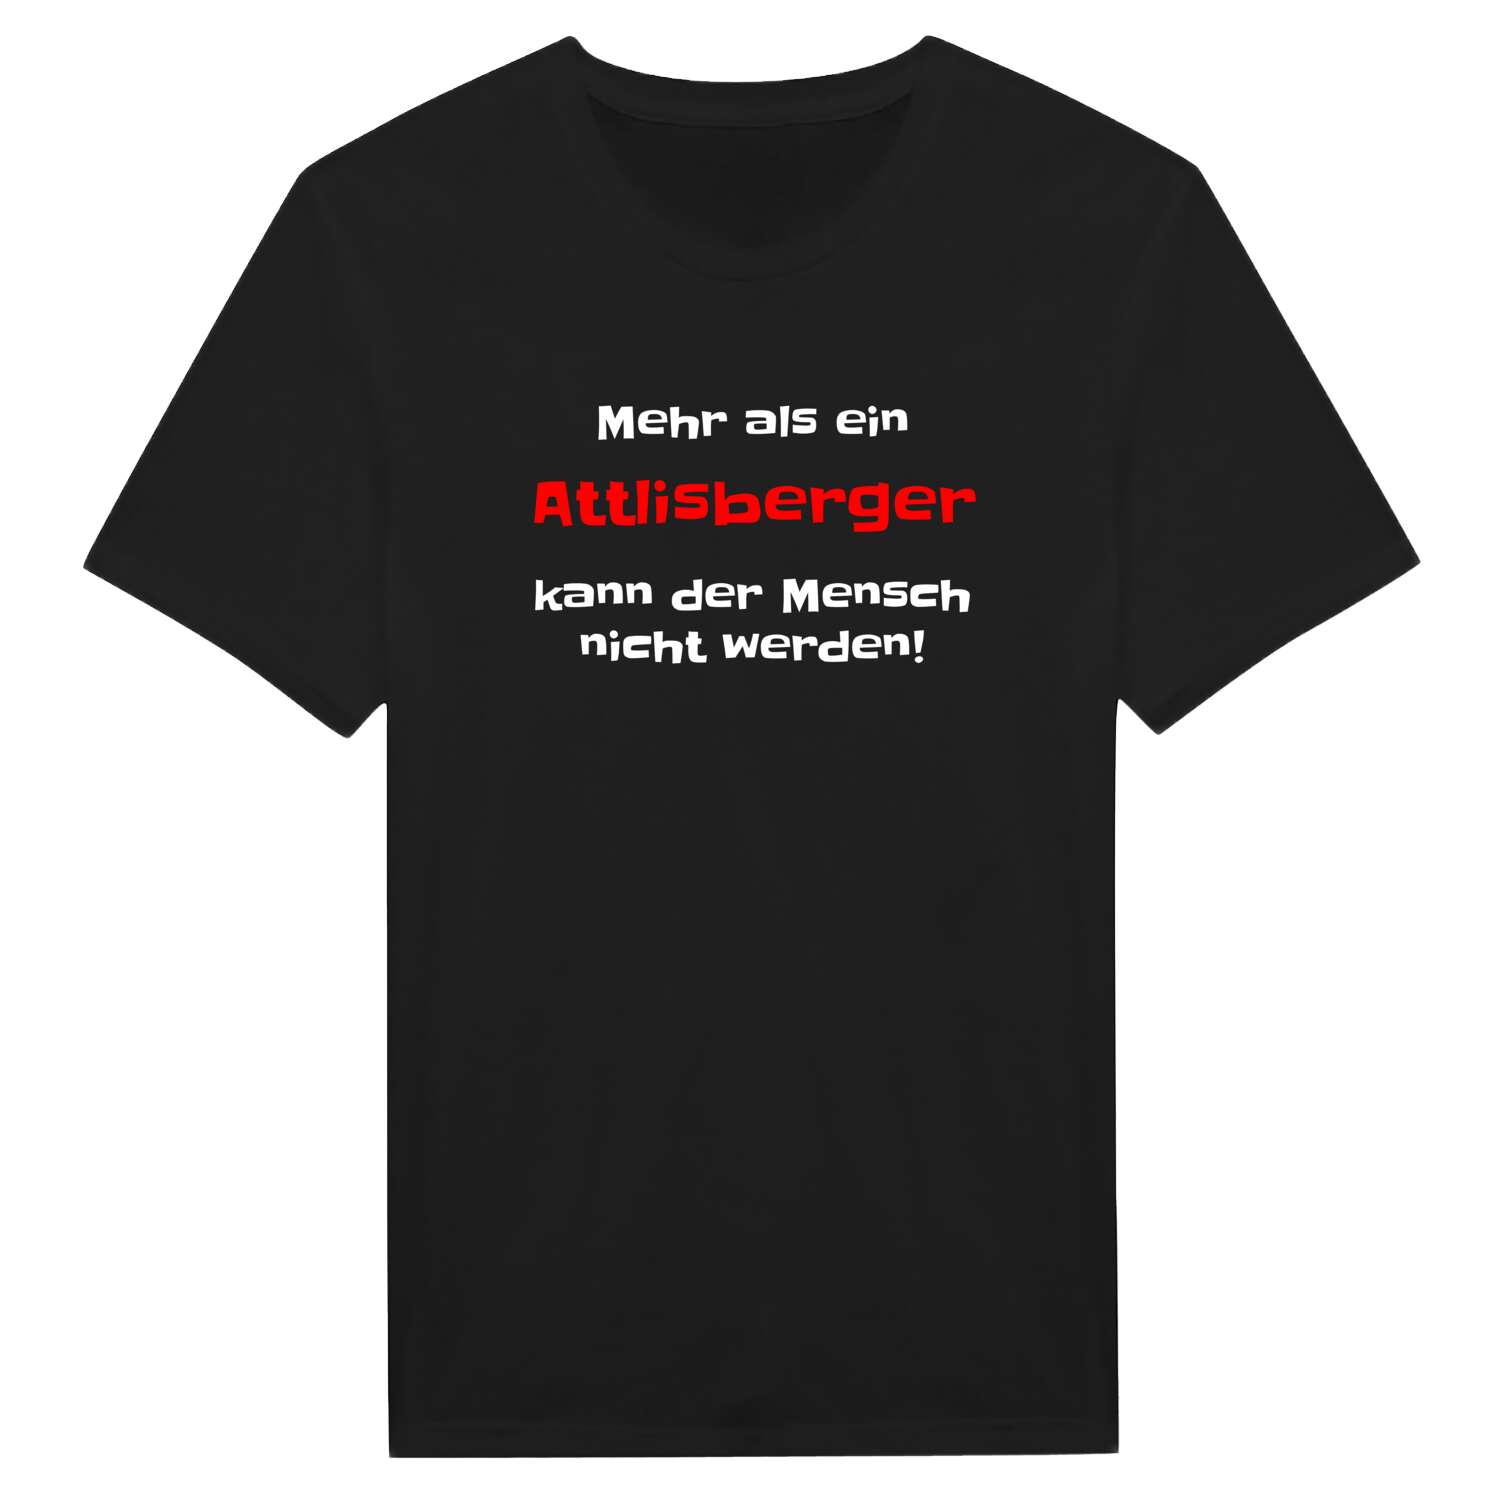 Attlisberg T-Shirt »Mehr als ein«